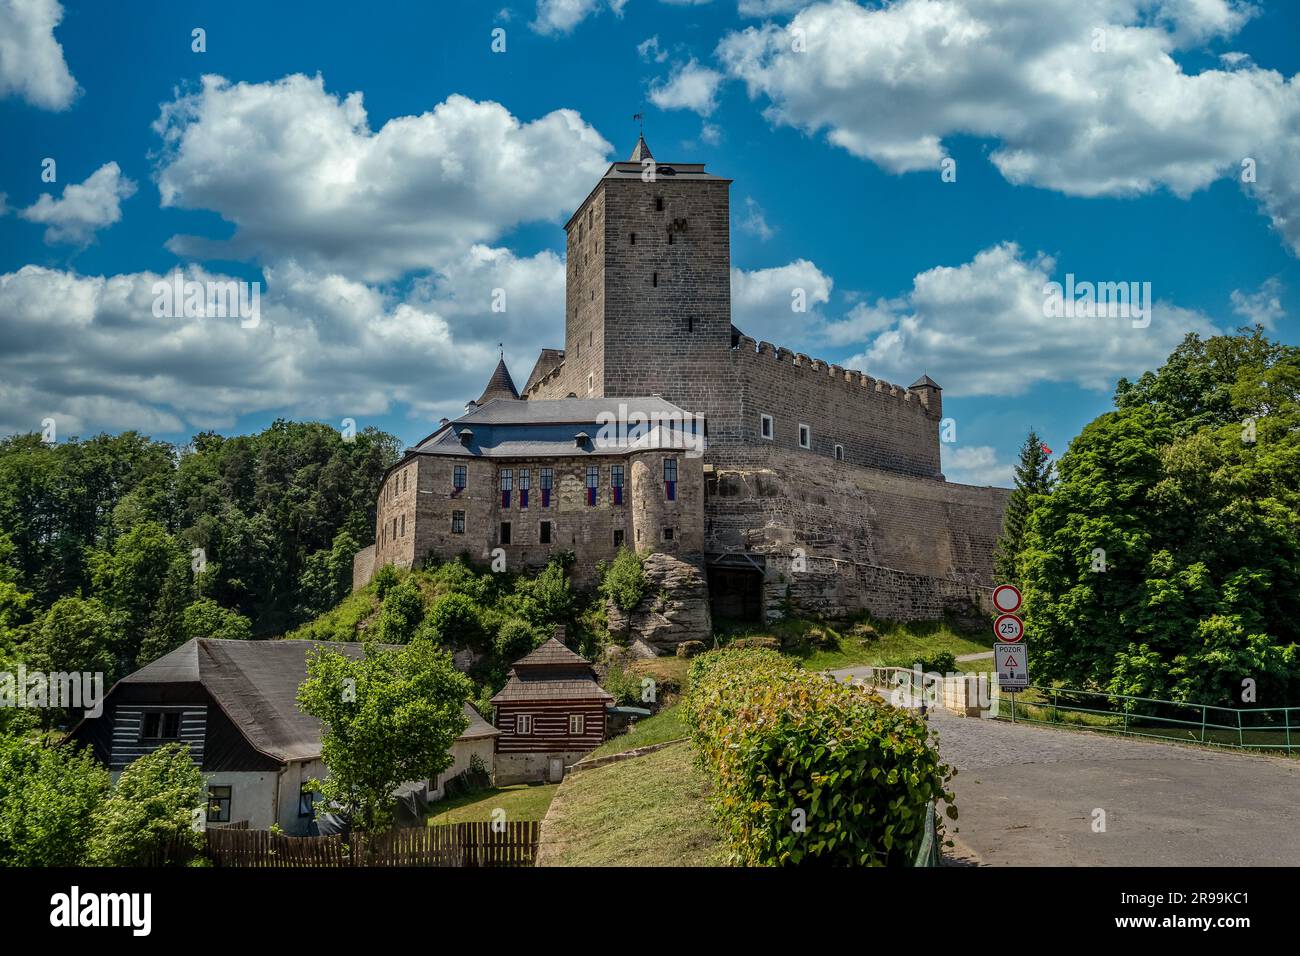 Vista aerea del Castlein di Kost Libosovice , costruita in alto stile gotico, la Torre Bianca è circondata da 2 pareti concentriche nel Paradiso Boemo Foto Stock